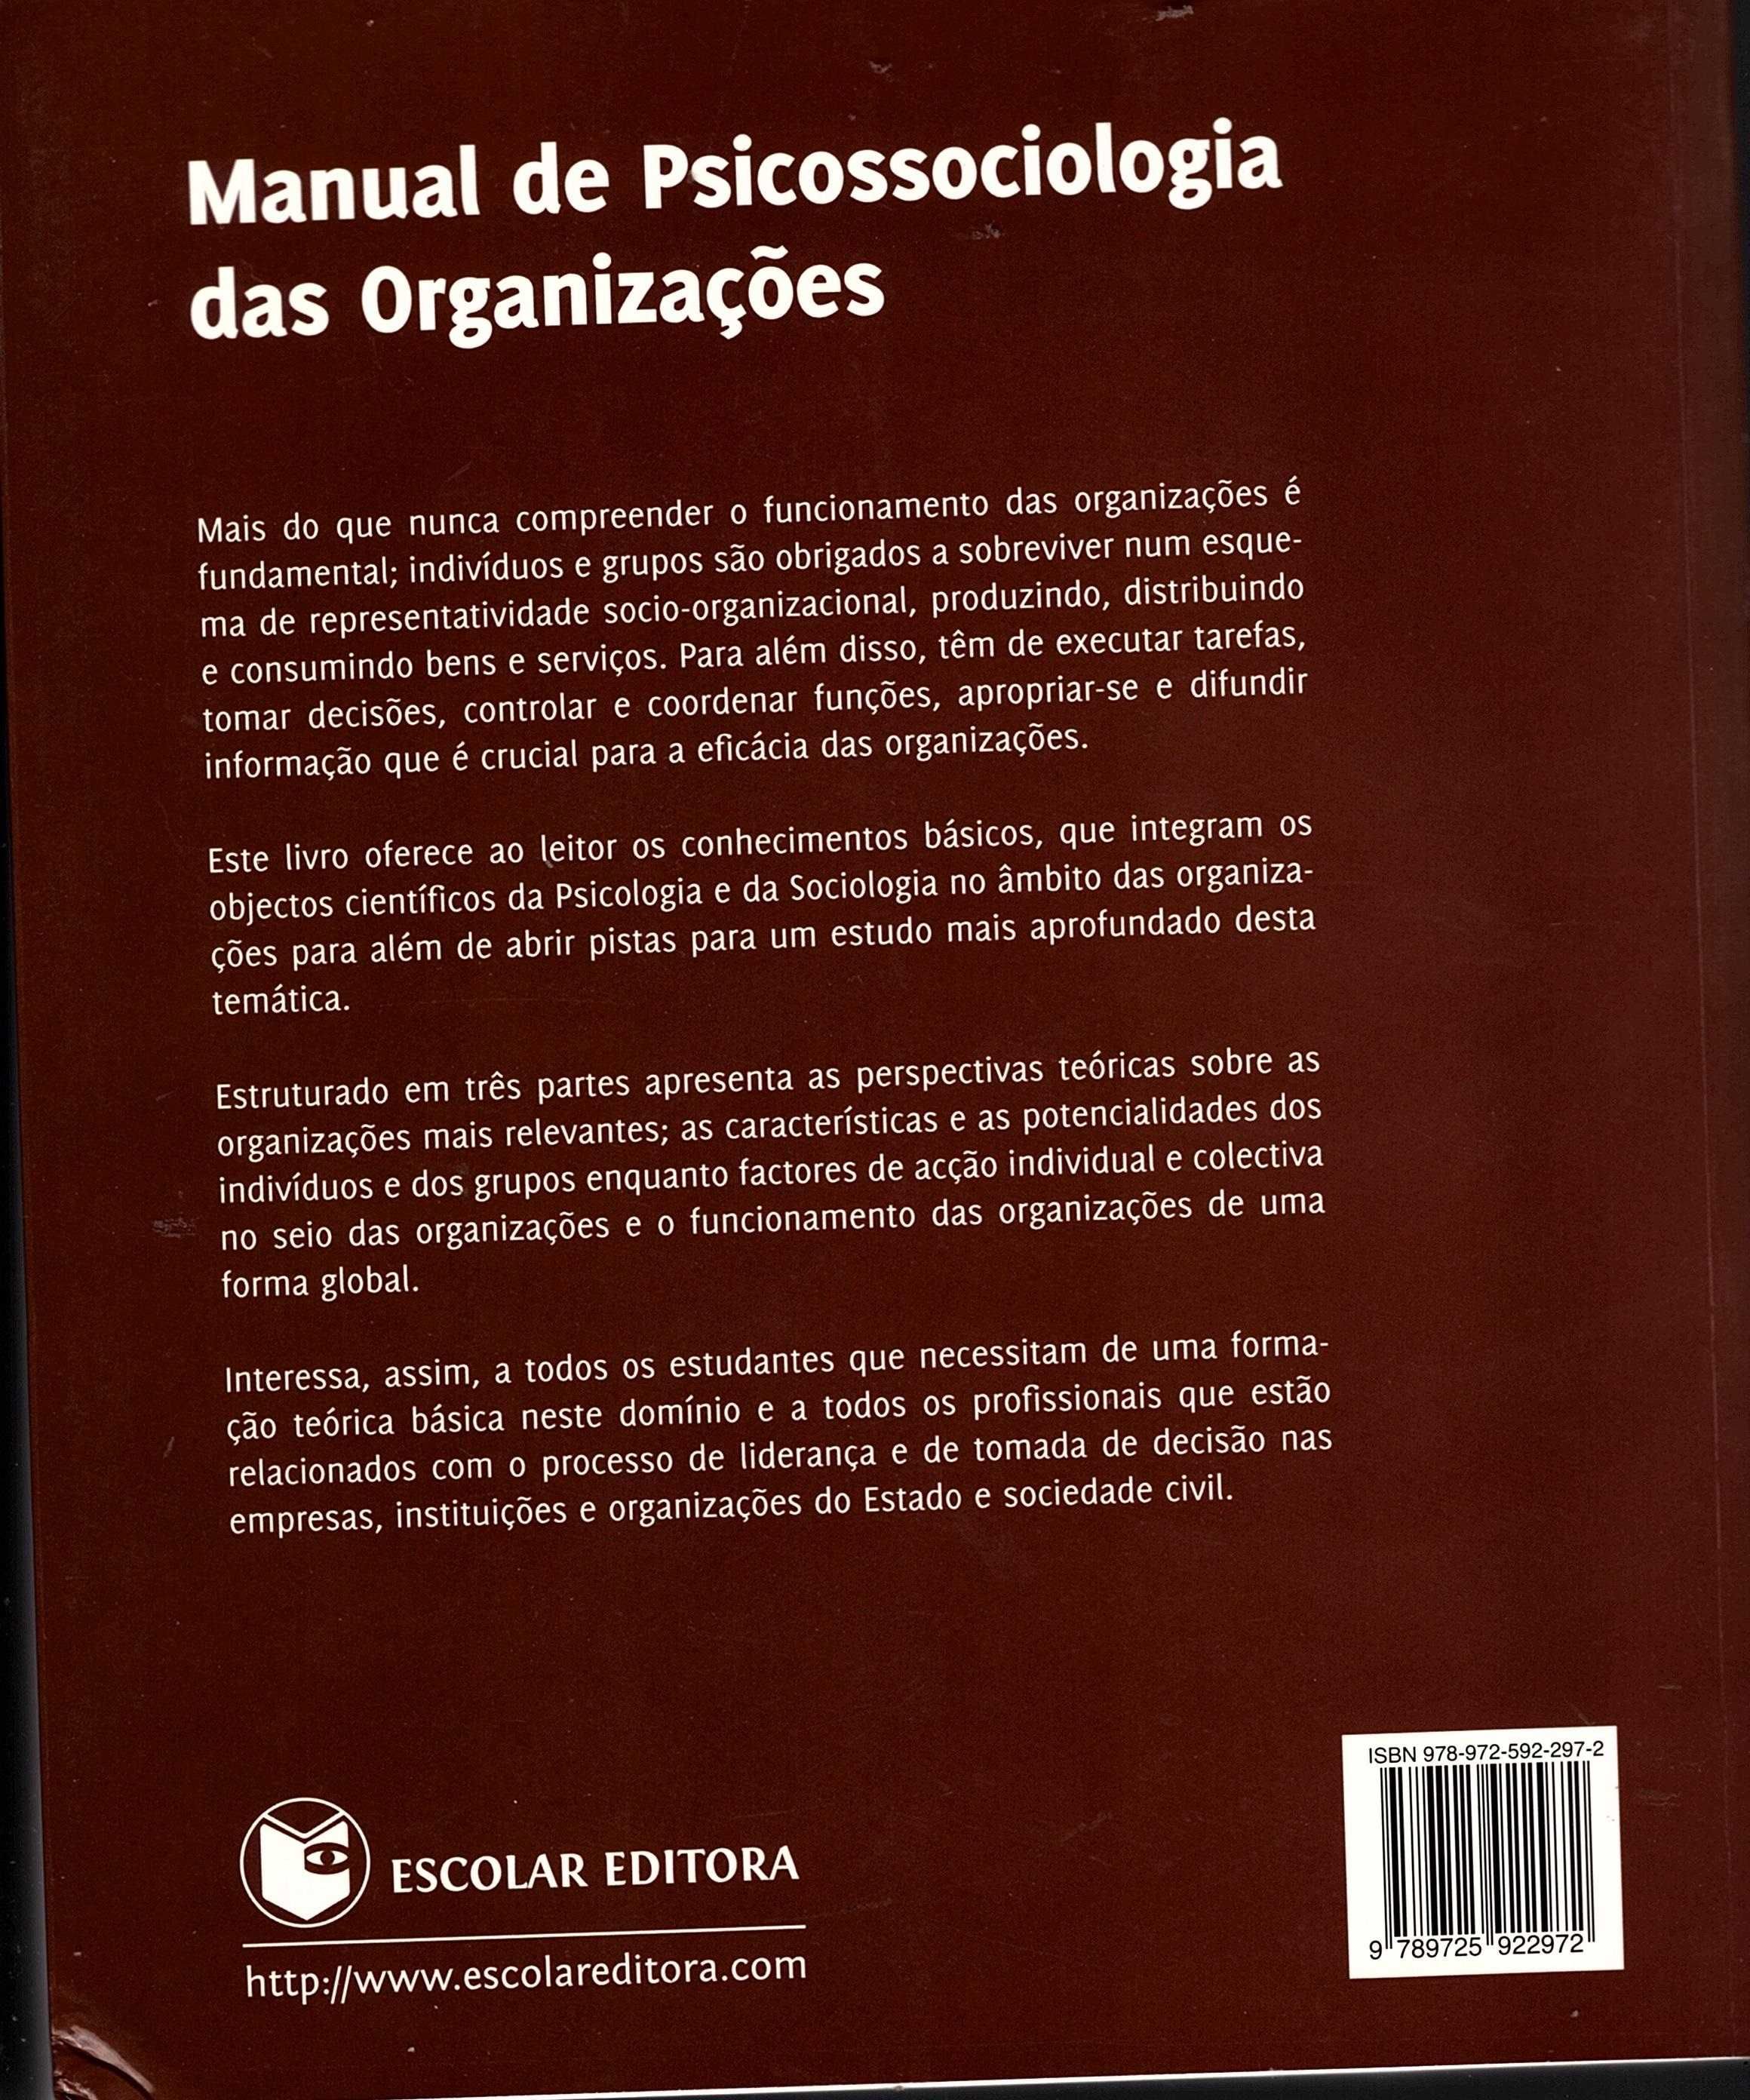 Manual de psicossociologia das organizações, Neves, Caetano e Ferreira